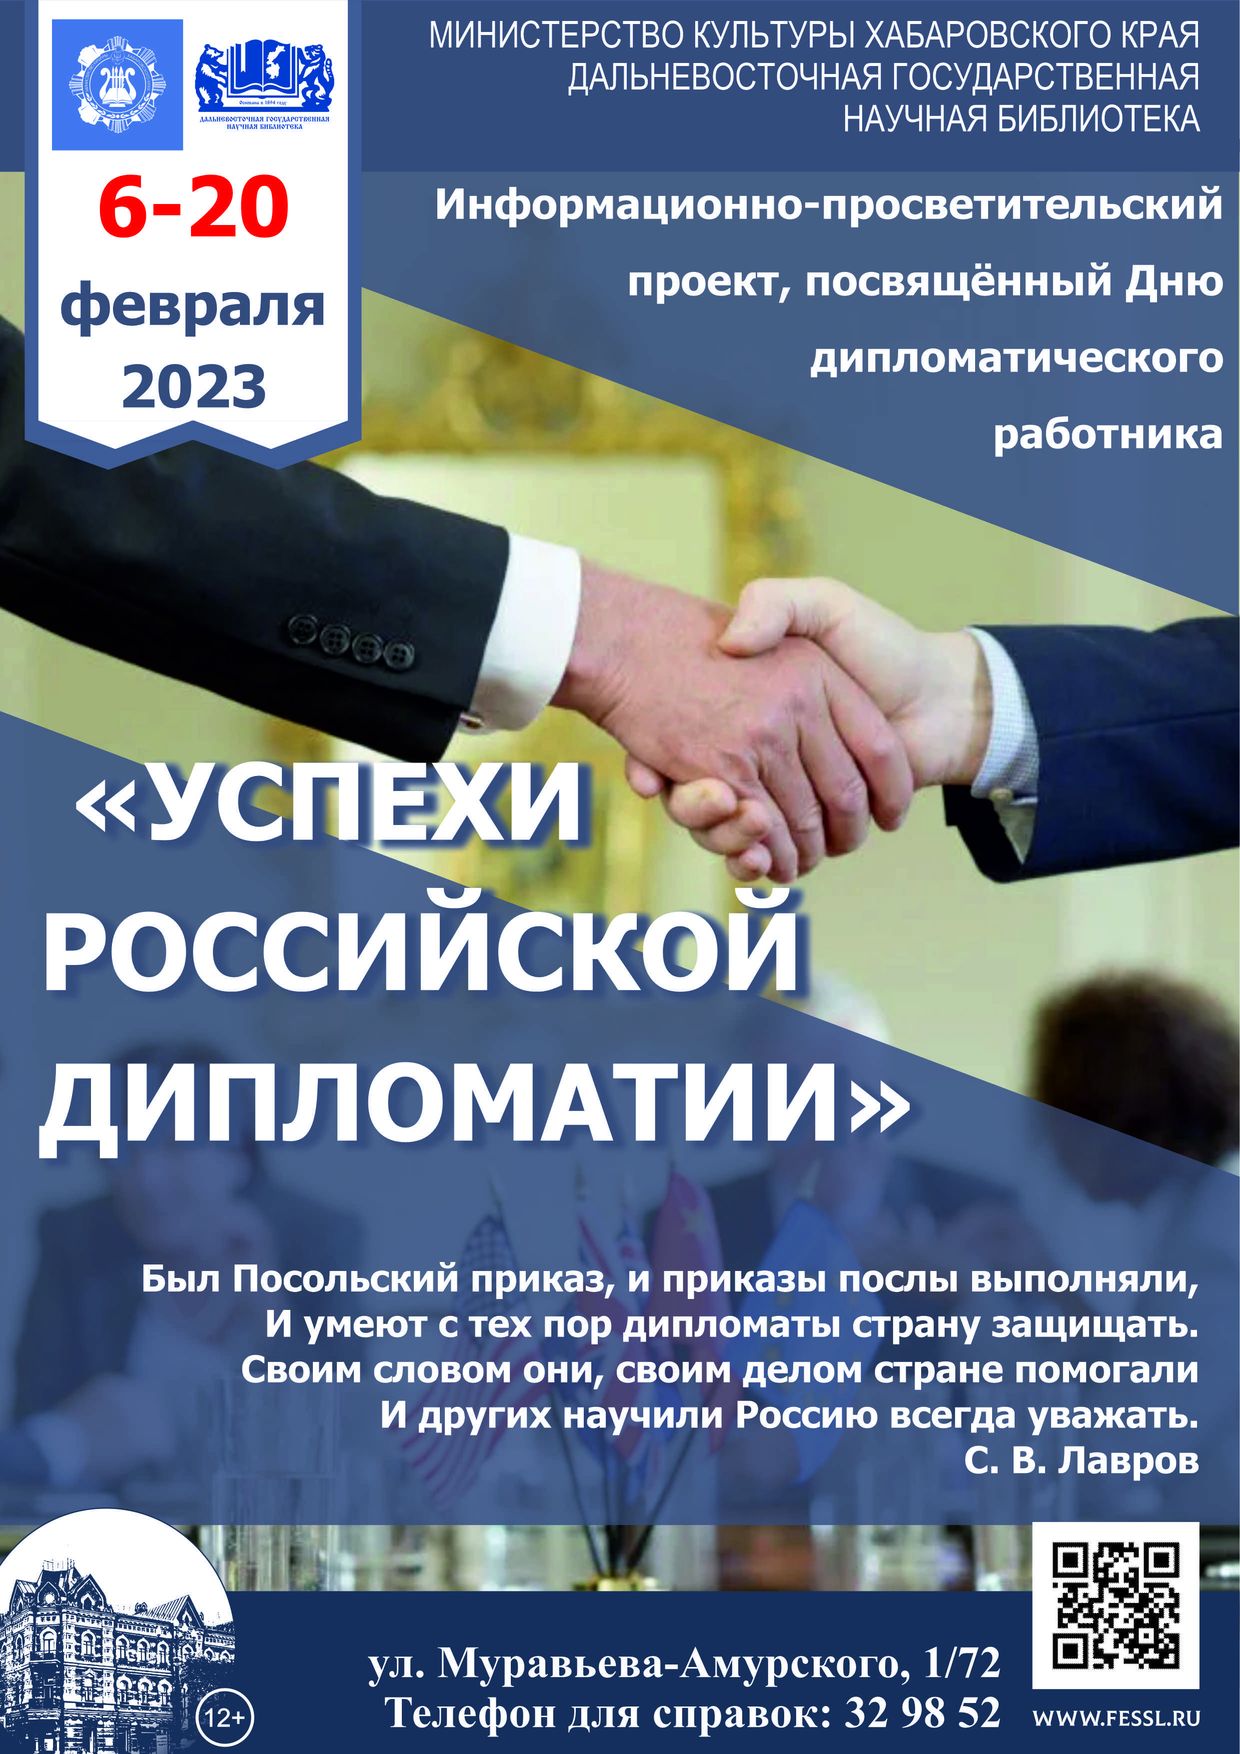 Библиотека представляет информационно-просветительский проект «Успехи российской дипломатии»